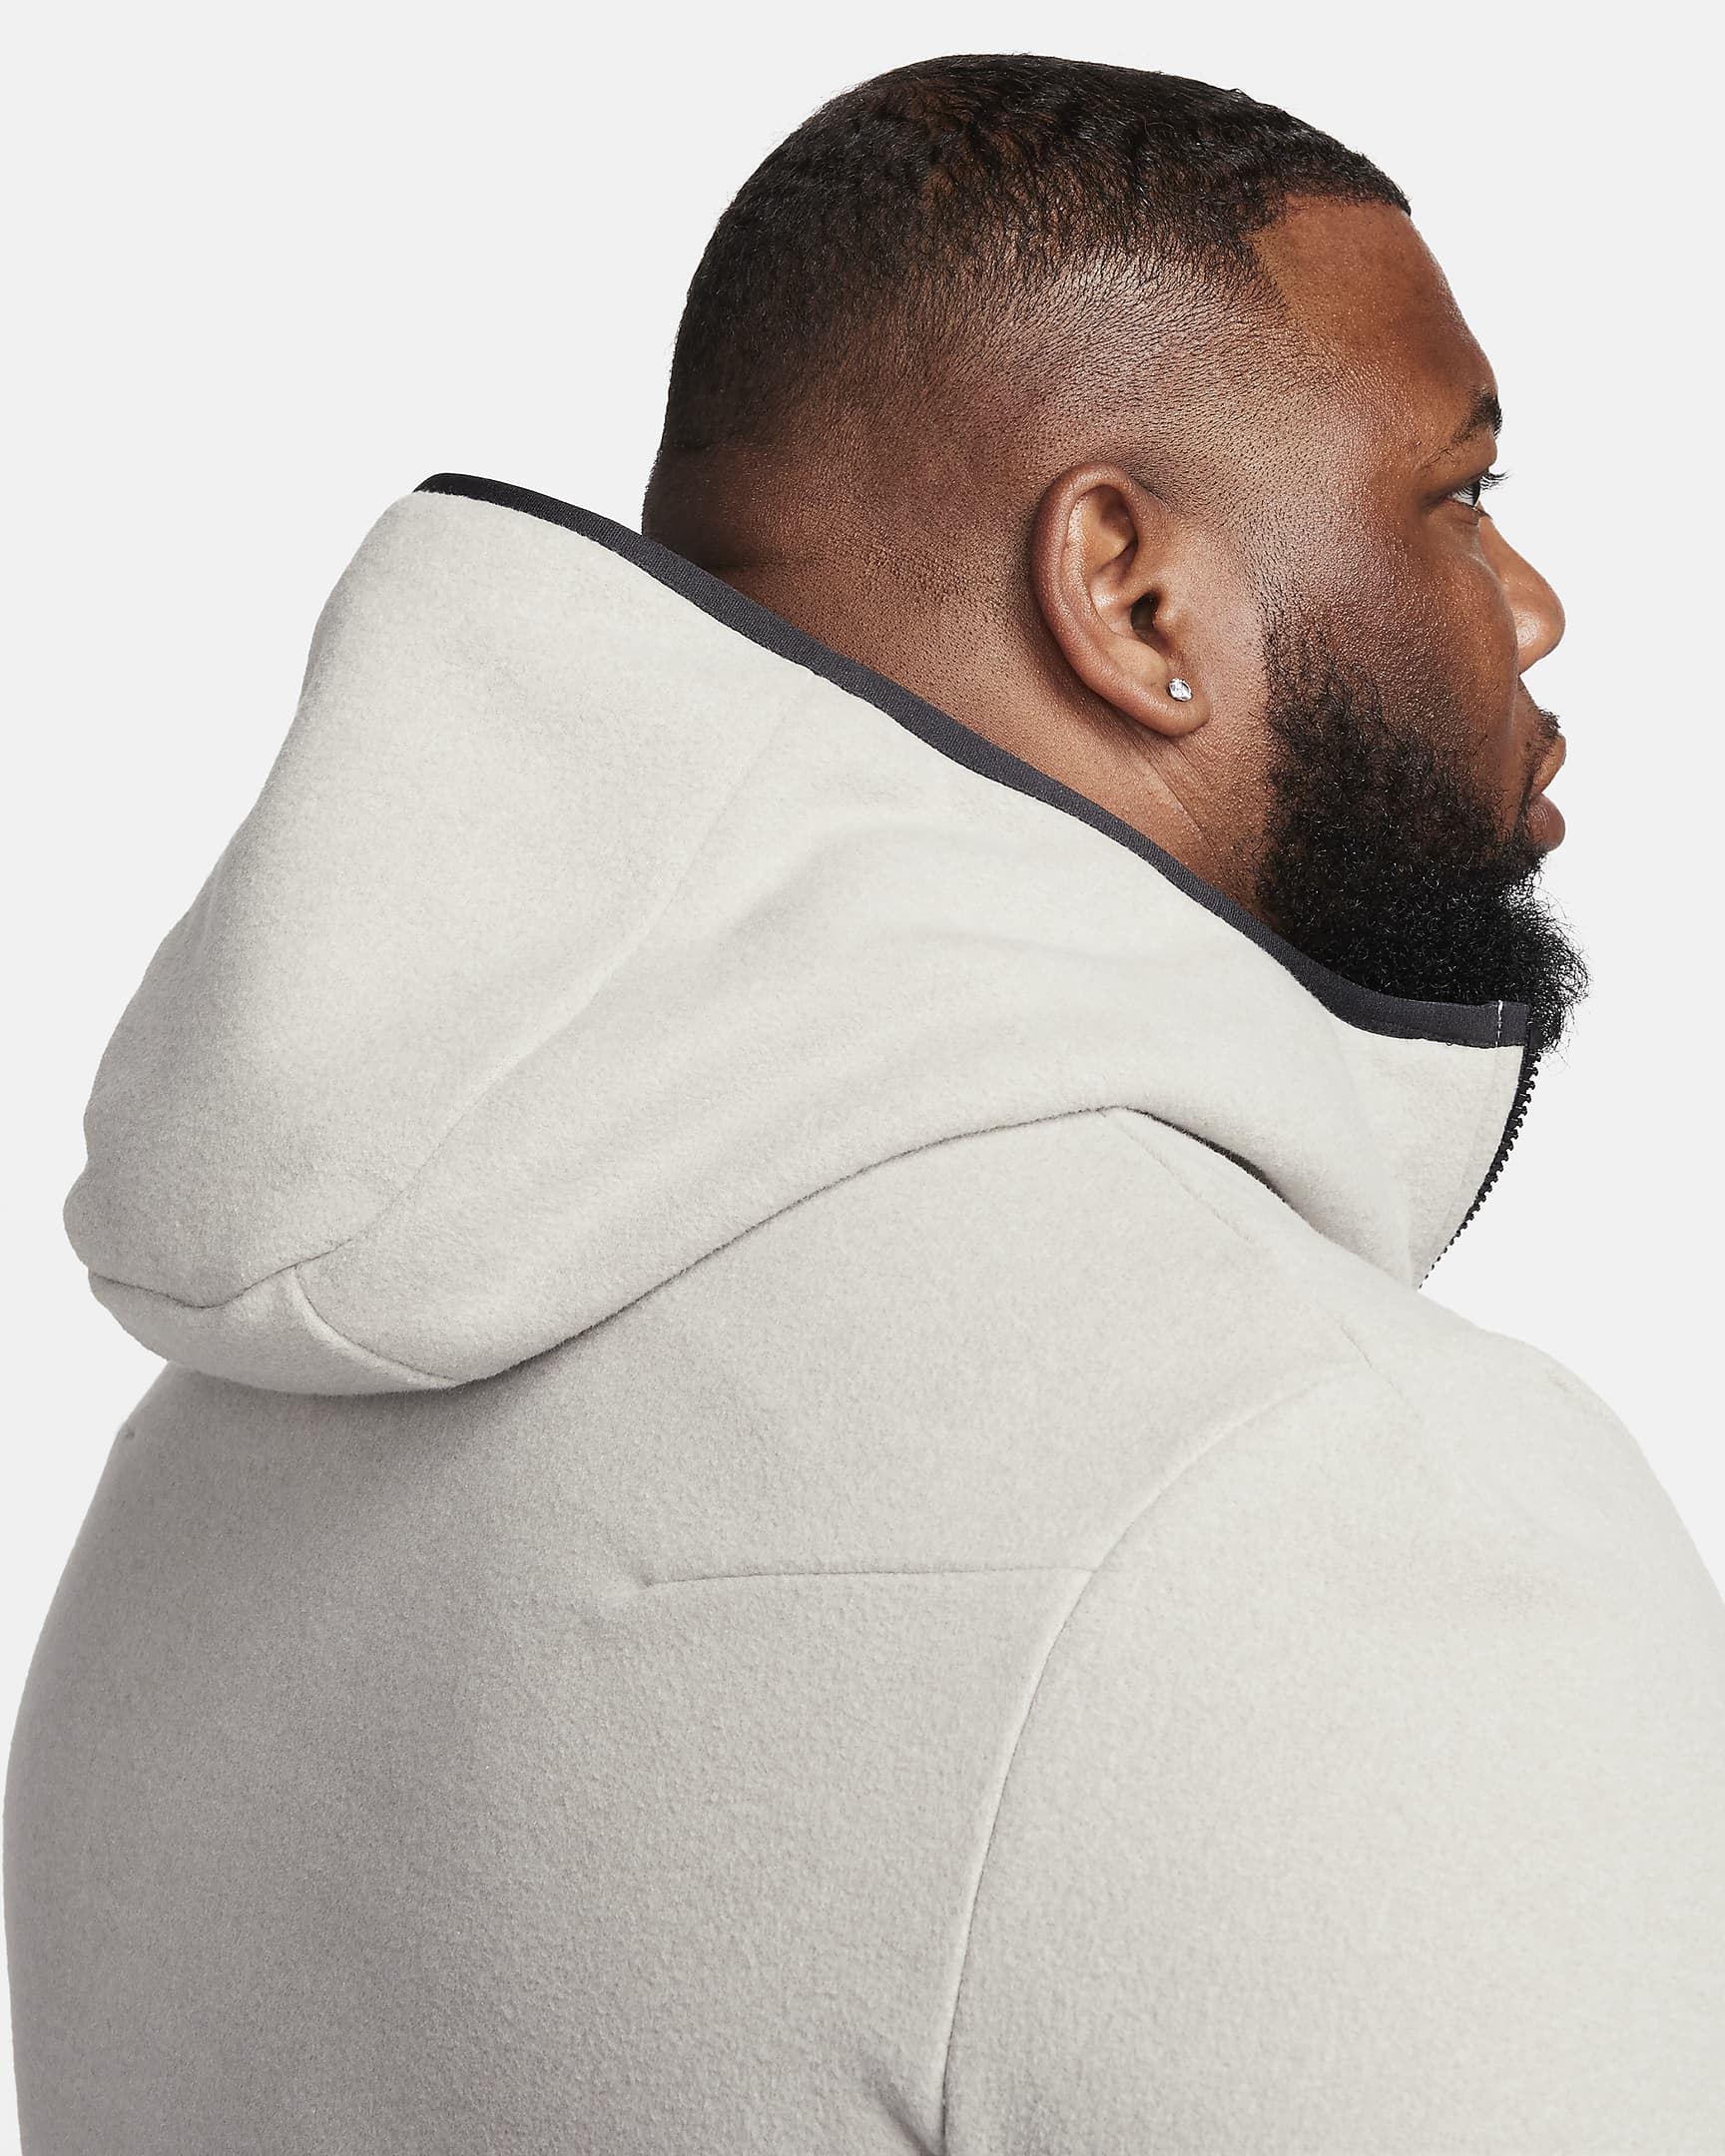 Nike Sportswear Tech Fleece Men's Full-zip Winterized Hoodie. Nike BG